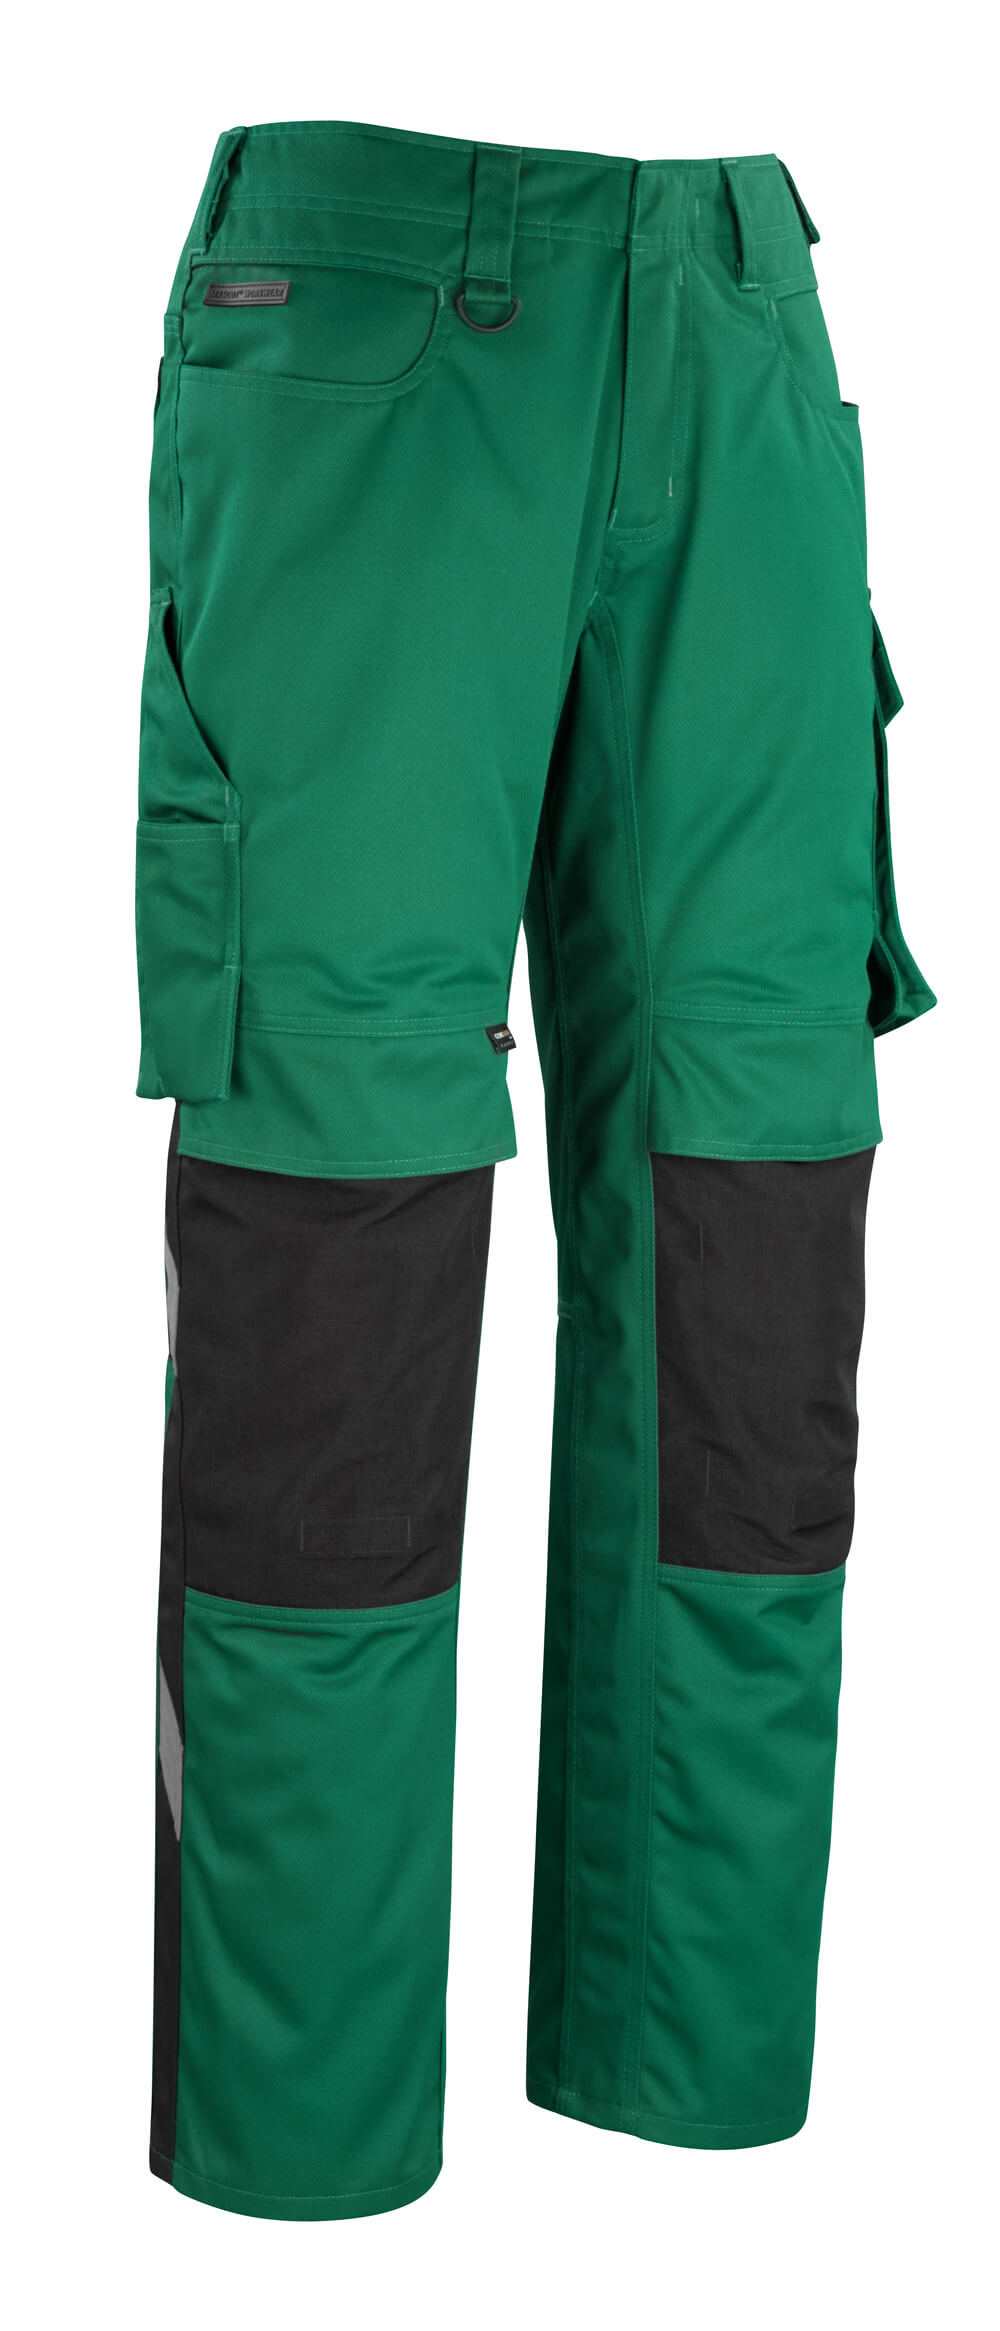 MASCOT® UNIQUE Hose mit Knietaschen »Erlangen« Gr. 76/C46, grün/schwarz - erhältlich bei ✭ HUG Technik ✓